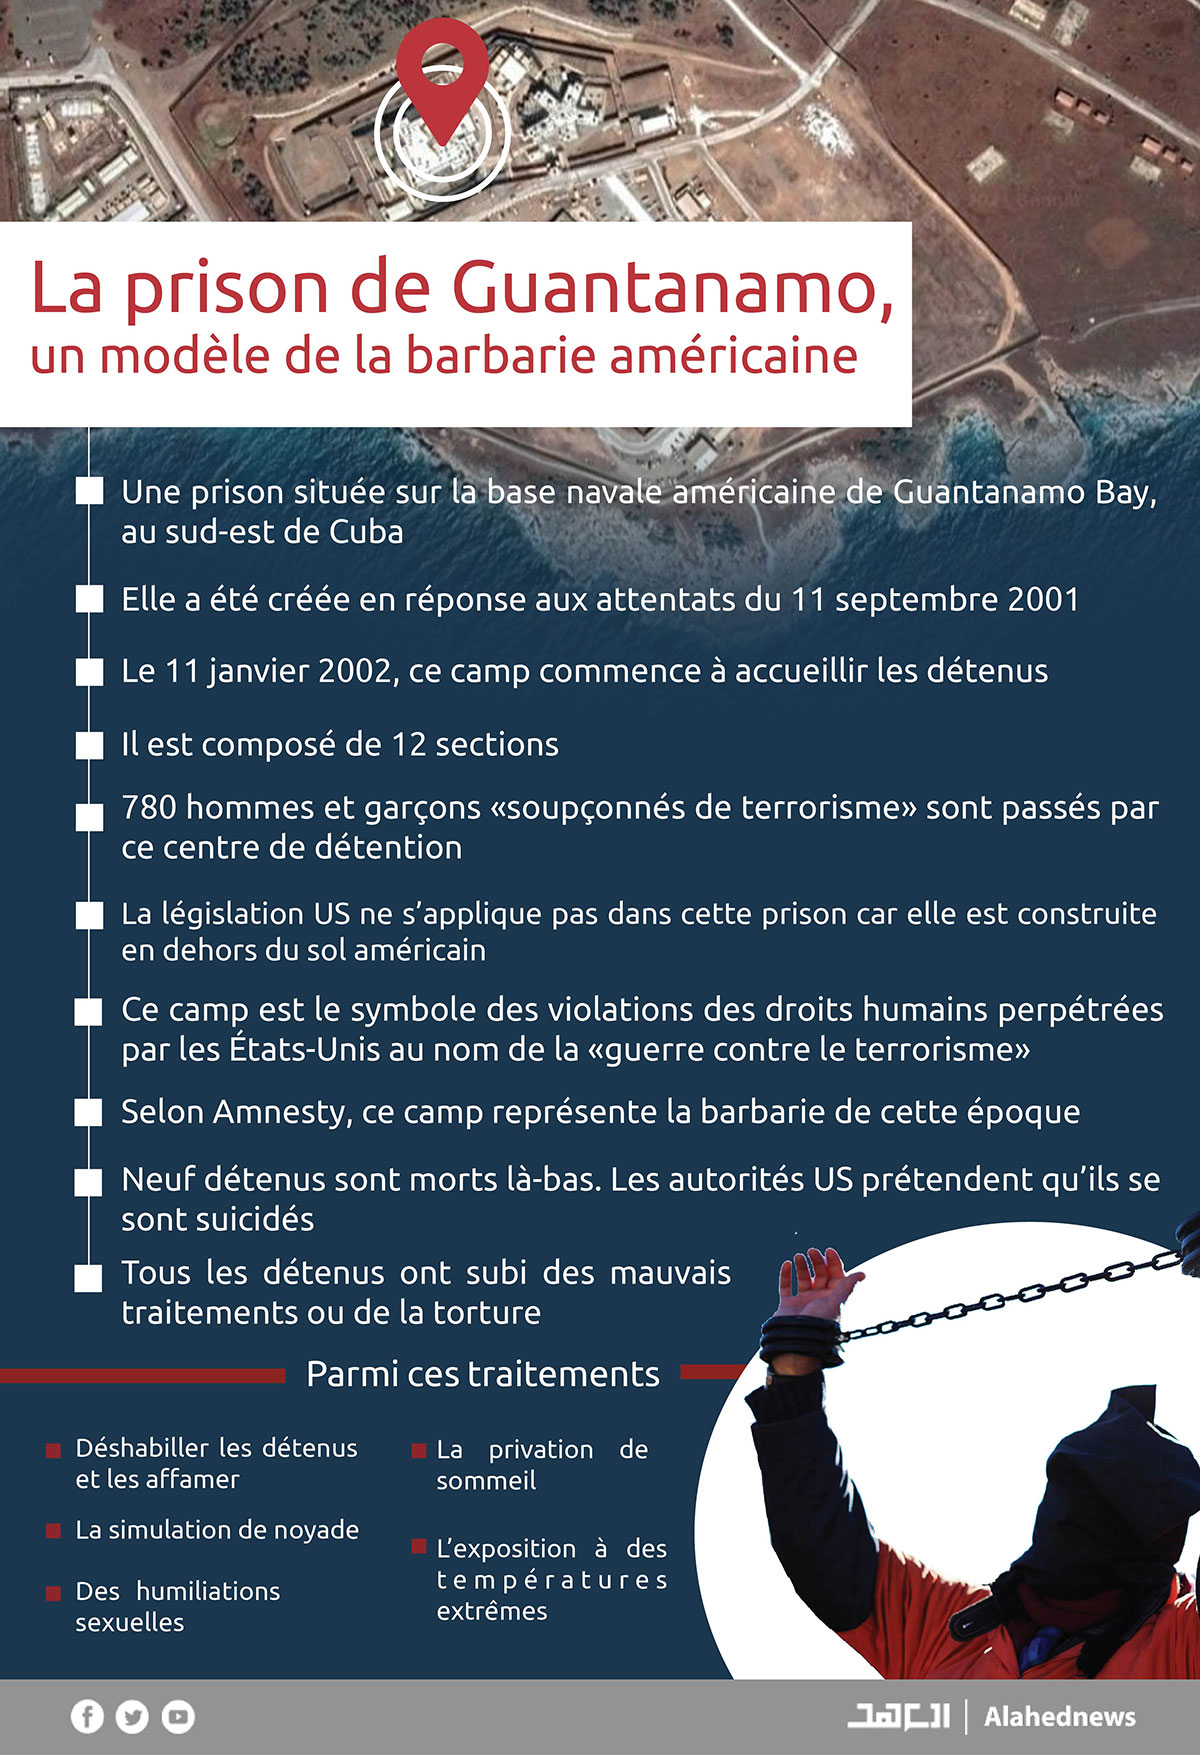 La prison de Guantanamo, un modèle de la barbarie américaine